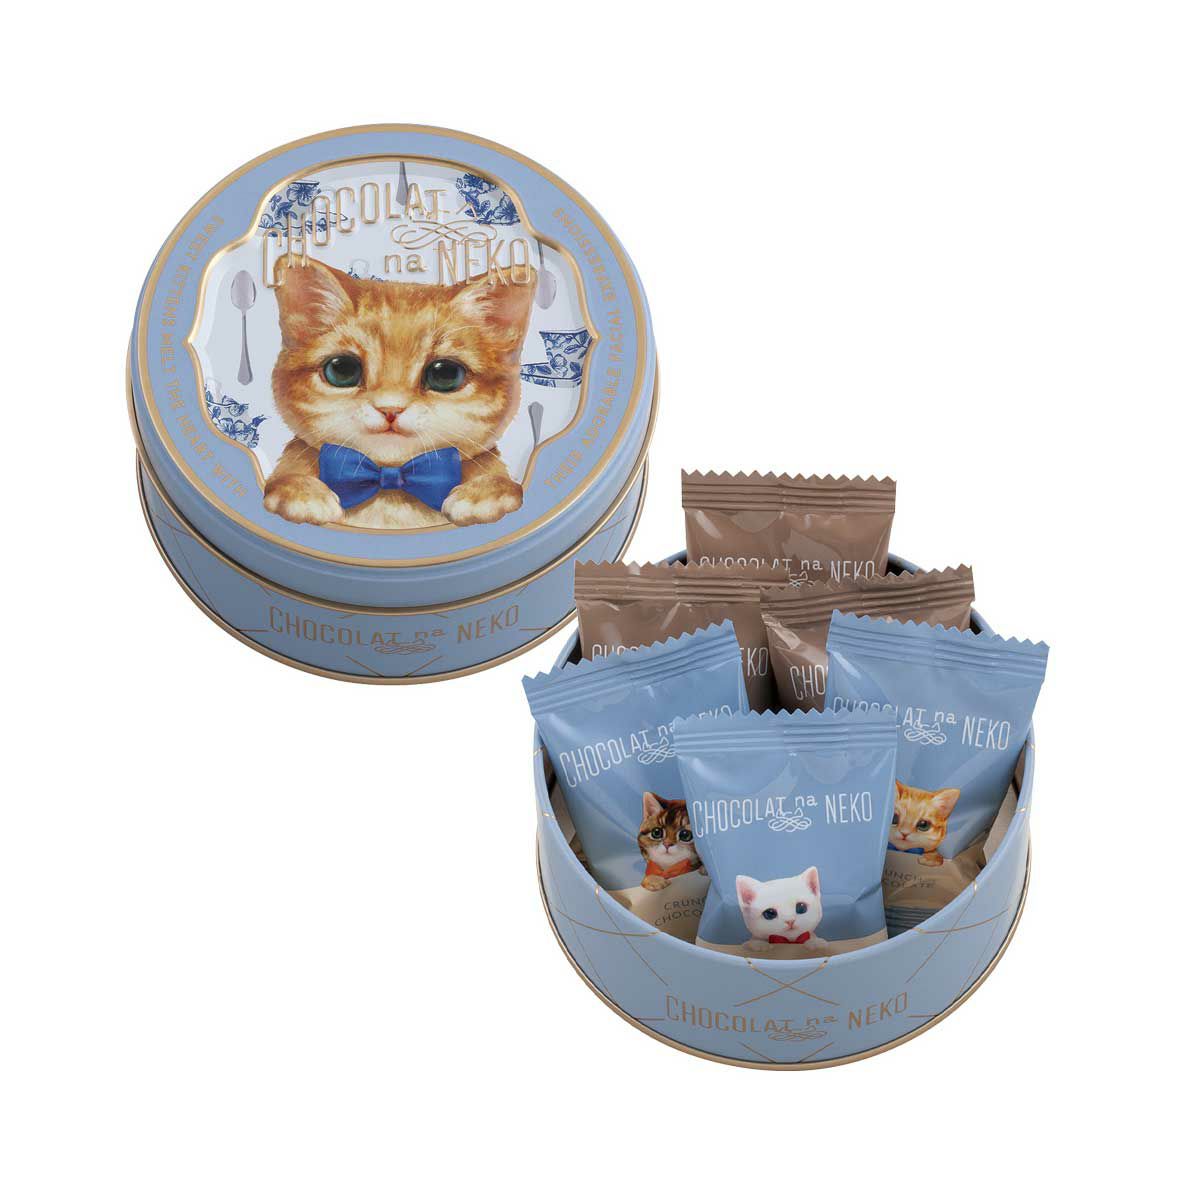 茶トラ猫モチーフのミニ缶チョコレート「甘えんぼうのミア」 by モロゾフのバレンタインチョコ「ショコラな猫」シリーズ